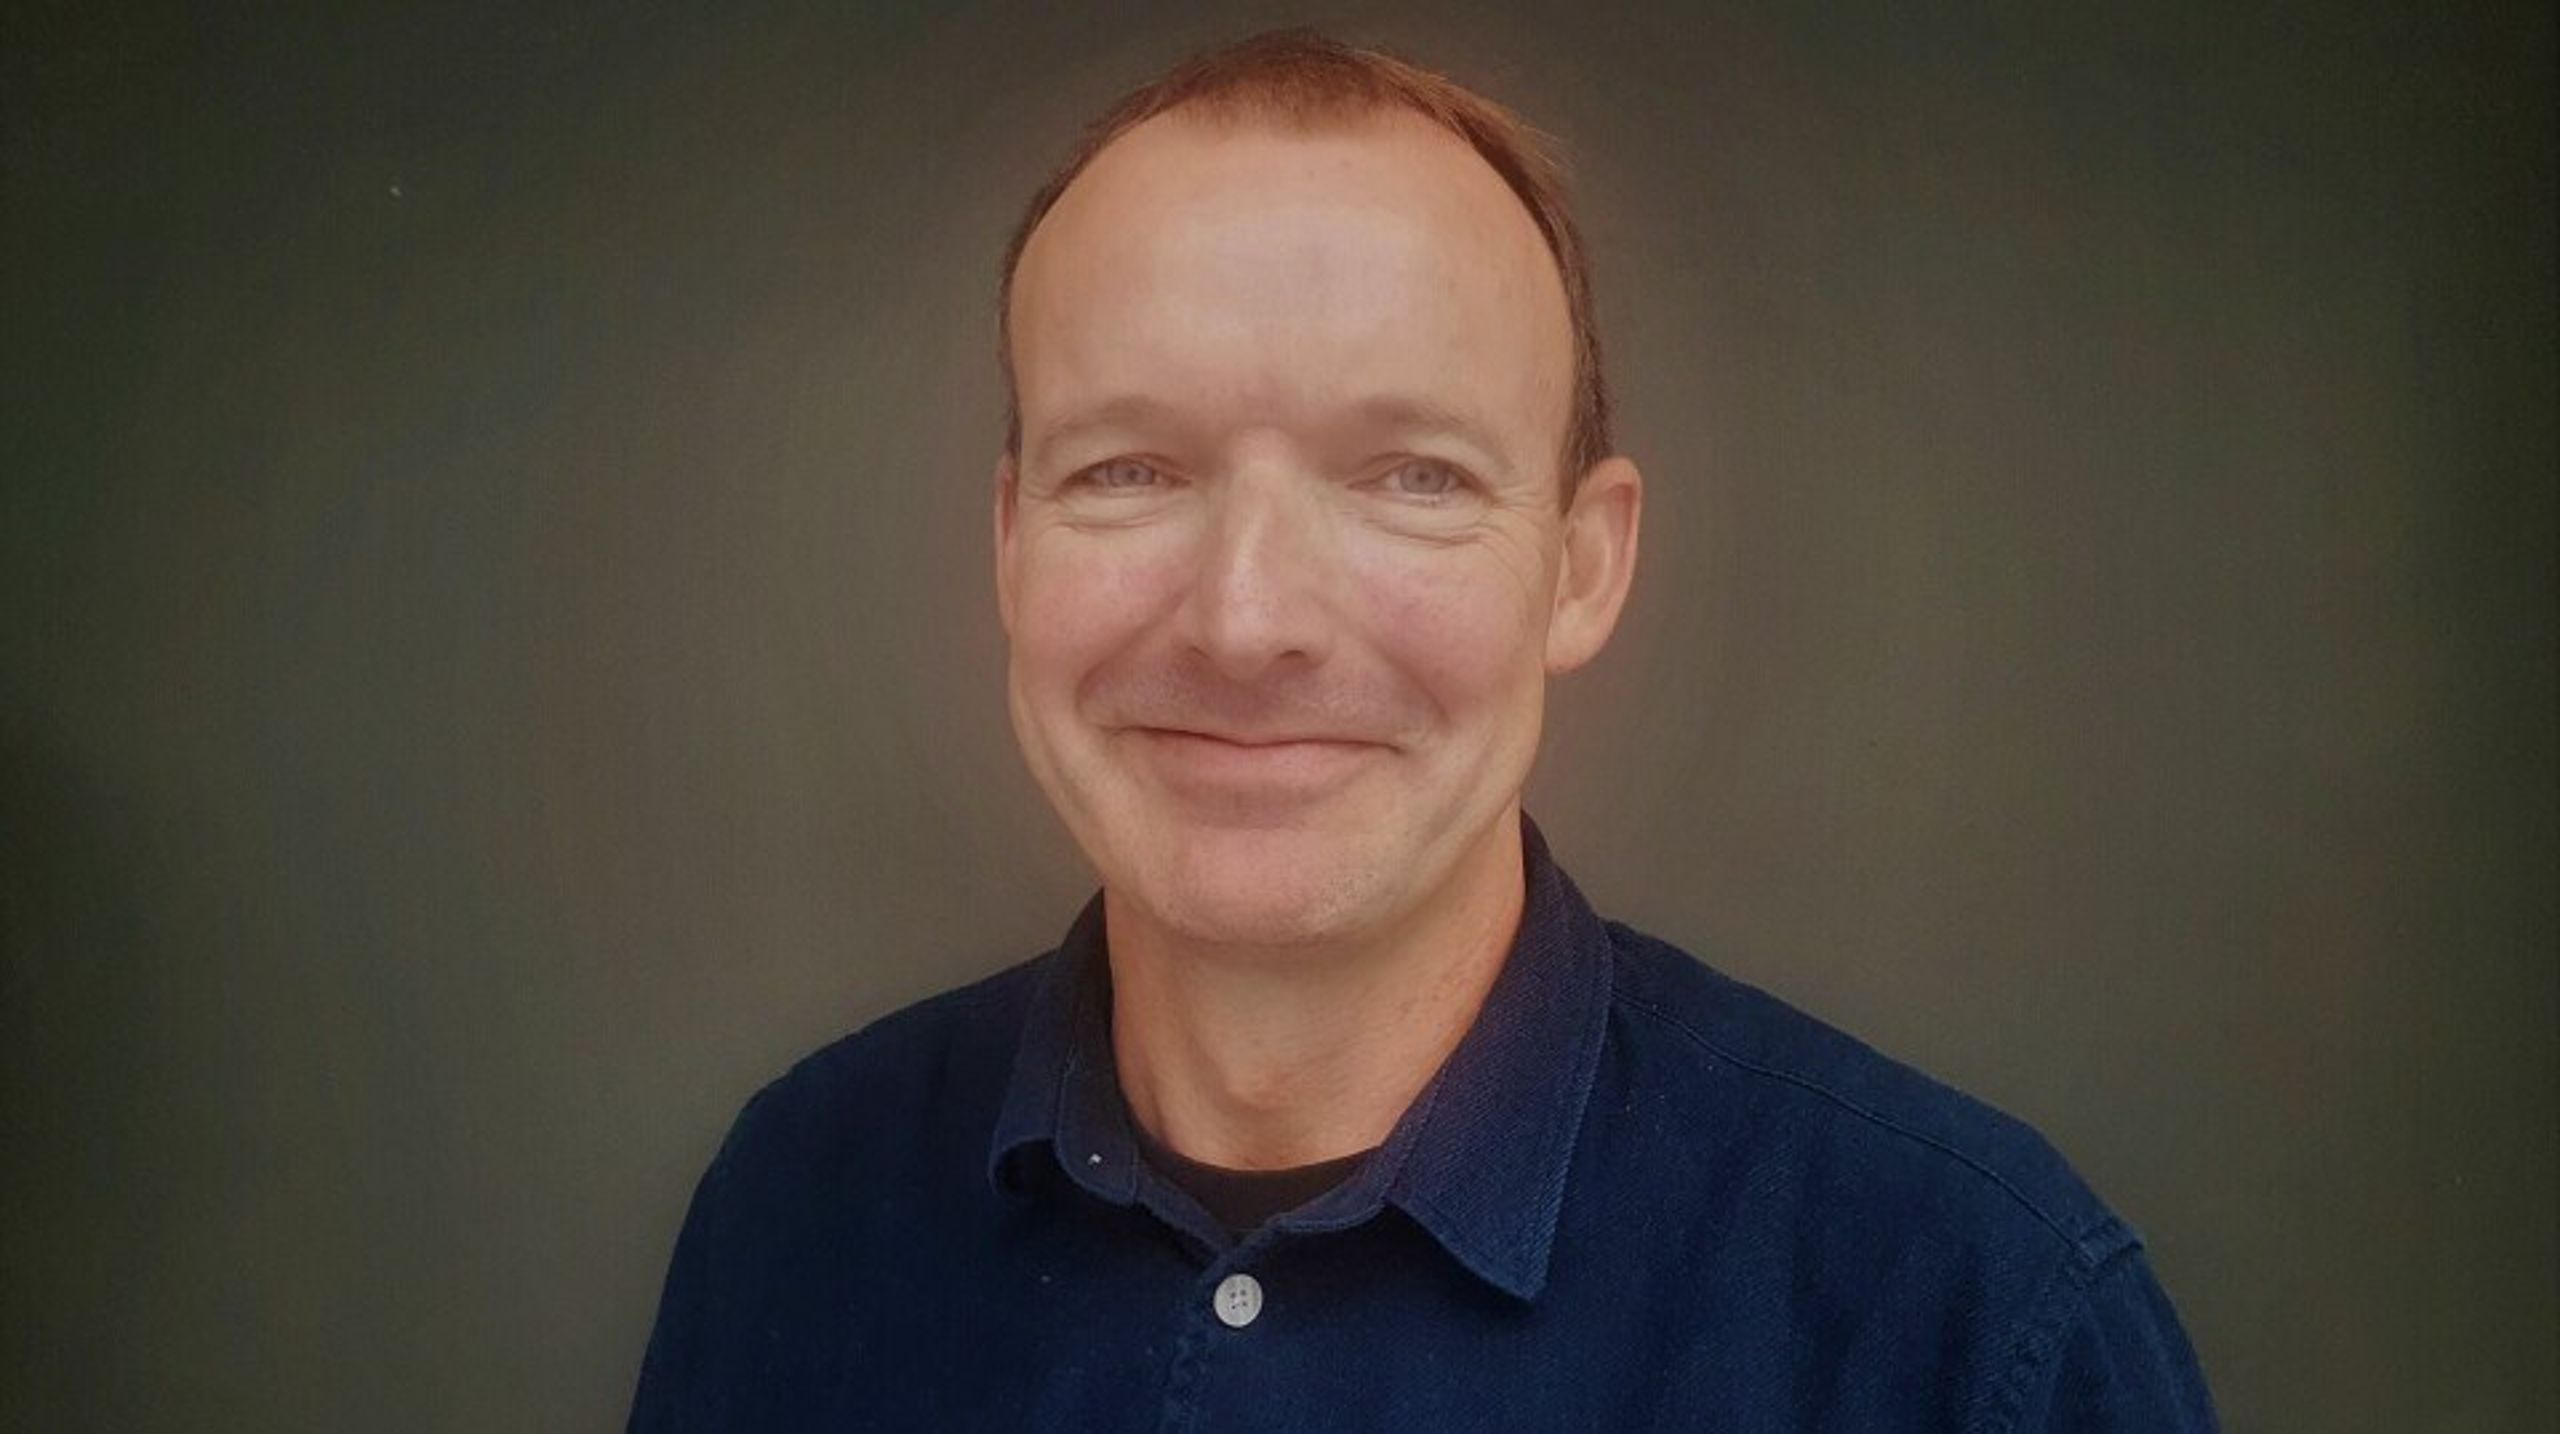 Niels Jørgen Jensen er formand for Silkeborg Lærerforening og har siddet i Dansk Lærerforenings hovedstyrelse siden efteråret 2020. Han overtager posten som næstformand efter Dorte Lange.